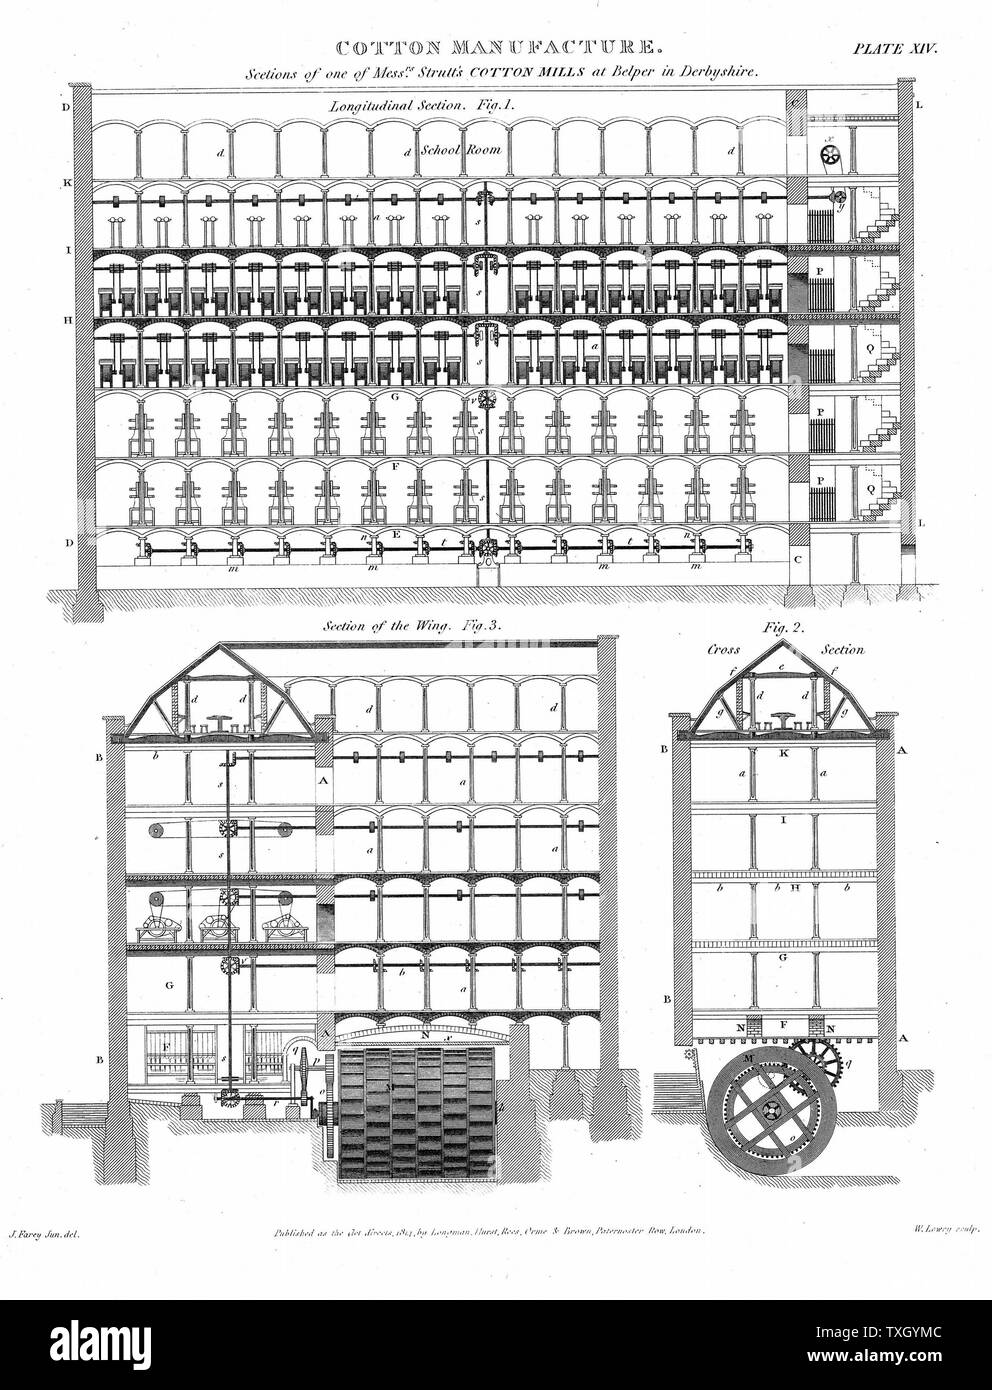 Schnittbild des Modells Baumwolle Strutt der Mühlen, Belper, Derbyshire, England. Wasser Rad- und Energieverteilung über Welle und belting. Wasser Frames werden in F, krempeln oben. Schulzimmer im oberen Teil des Gebäudes. Kupferstich 1820 Stockfoto